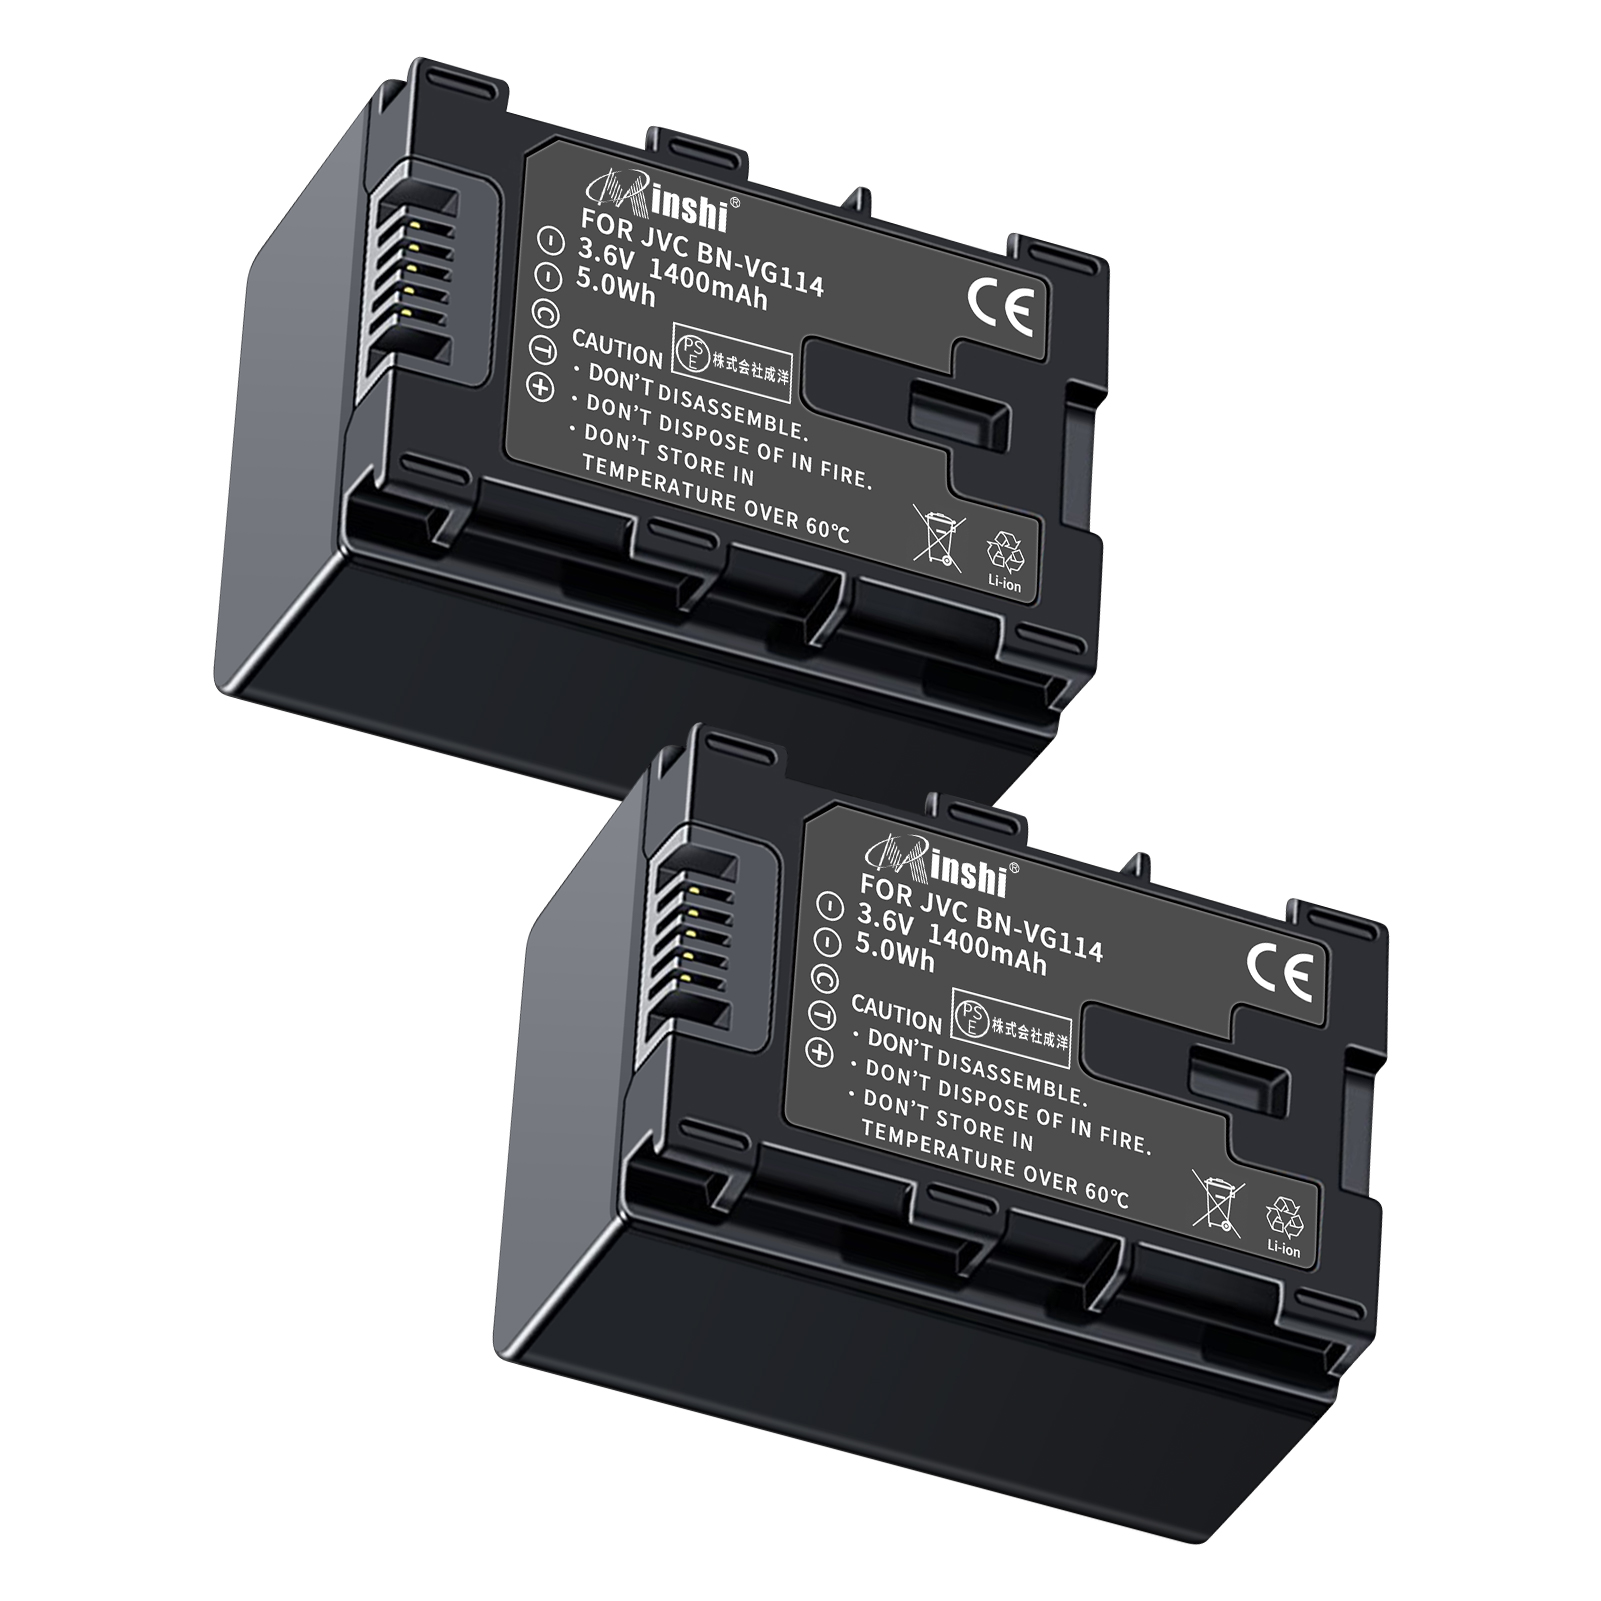 【２個セット】 minshi VICTOR GZ-HD620 BN-VG121 対応 互換バッテリー 1400mAh 高品質交換用バッテリー